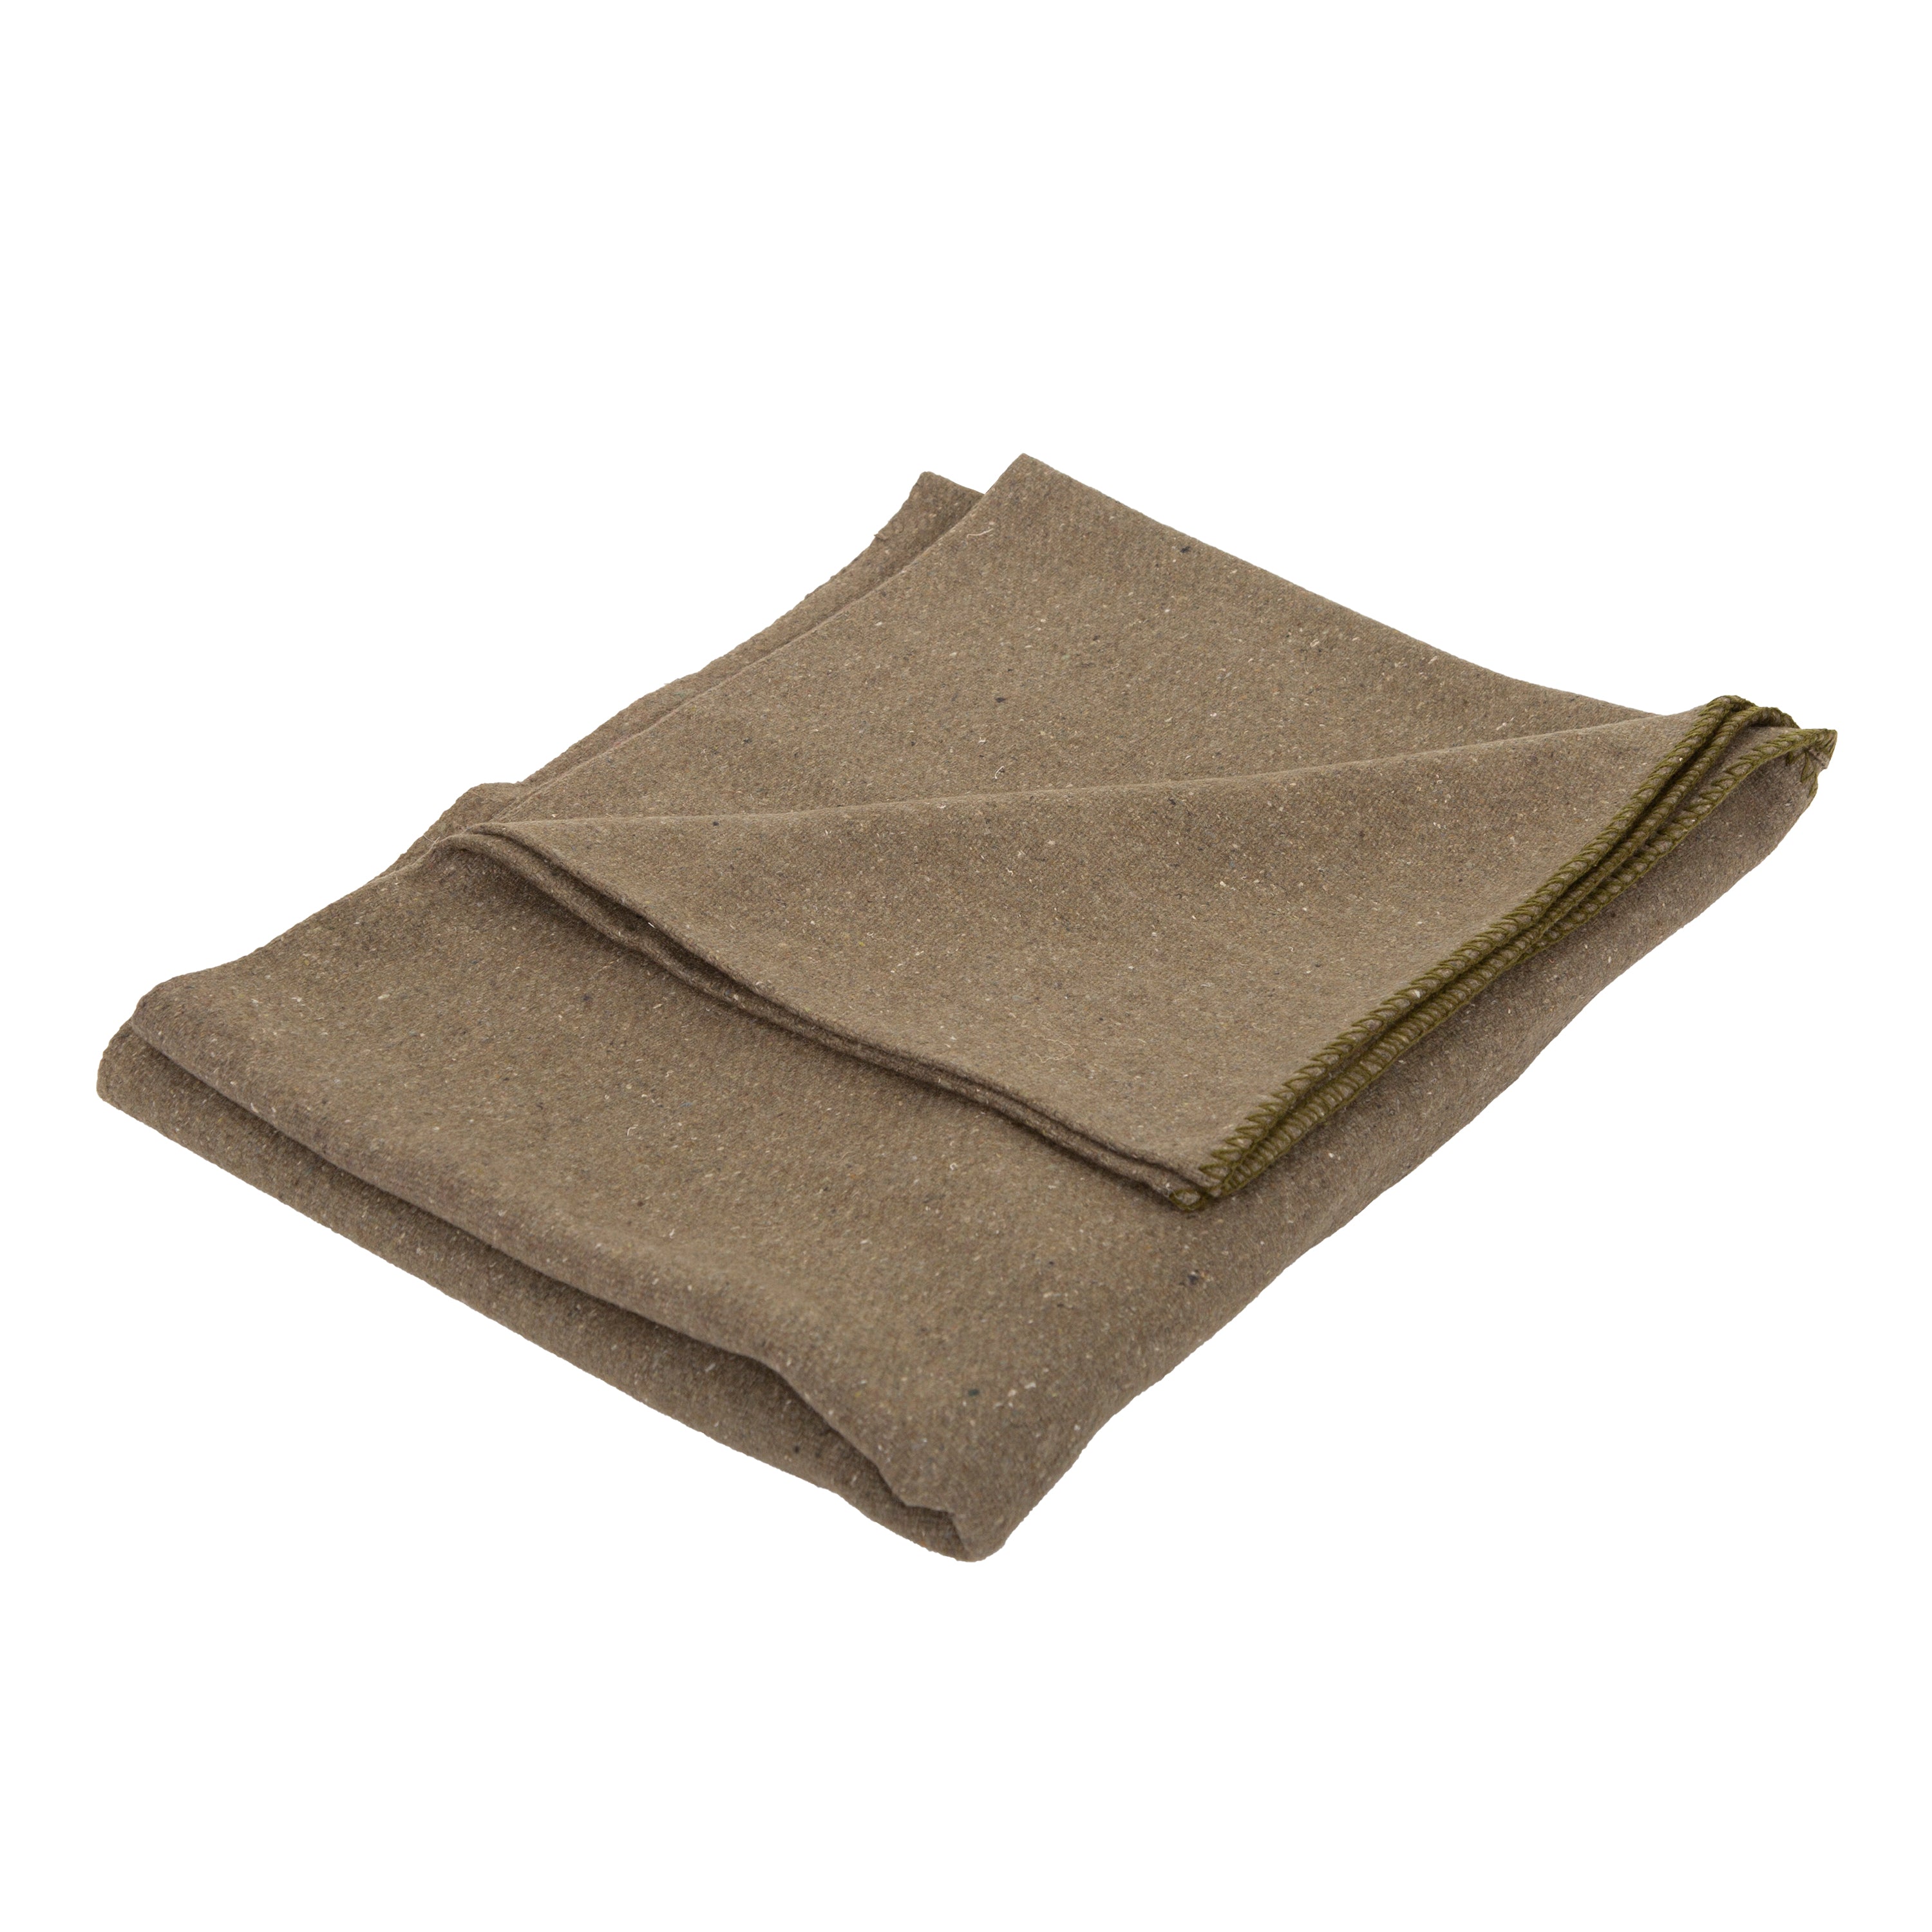 Wool Blanket - Od - 60 Inch X 80 Inch